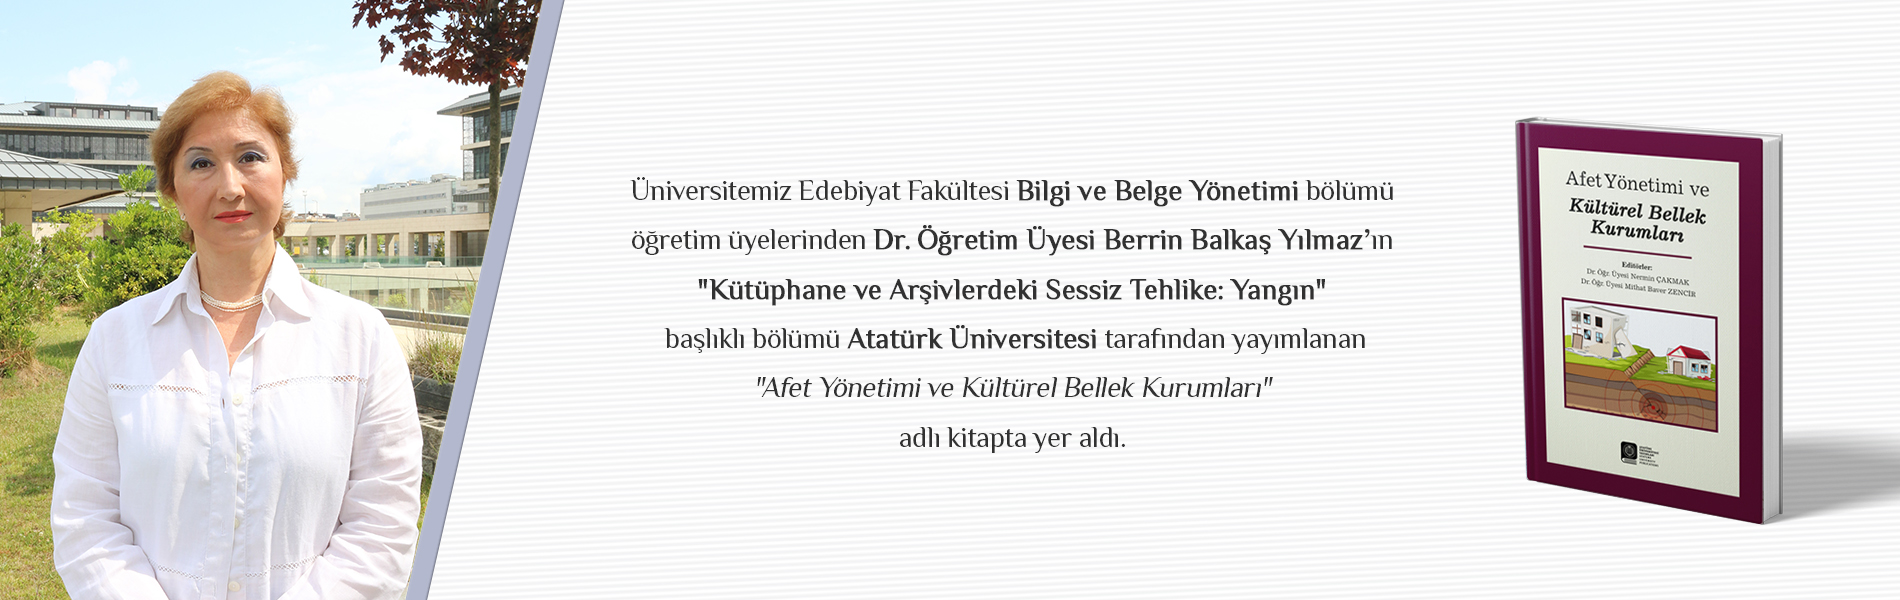 Dr. Öğr. Üyesi Berrin BALKAŞ YILMAZ’ın "Kütüphane ve Arşivlerdeki Sessiz Tehlike: Yangın" Başlıklı Bölümü Atatürk Üniversitesi Tarafından Yayınlanan Kitapta Yer Aldı